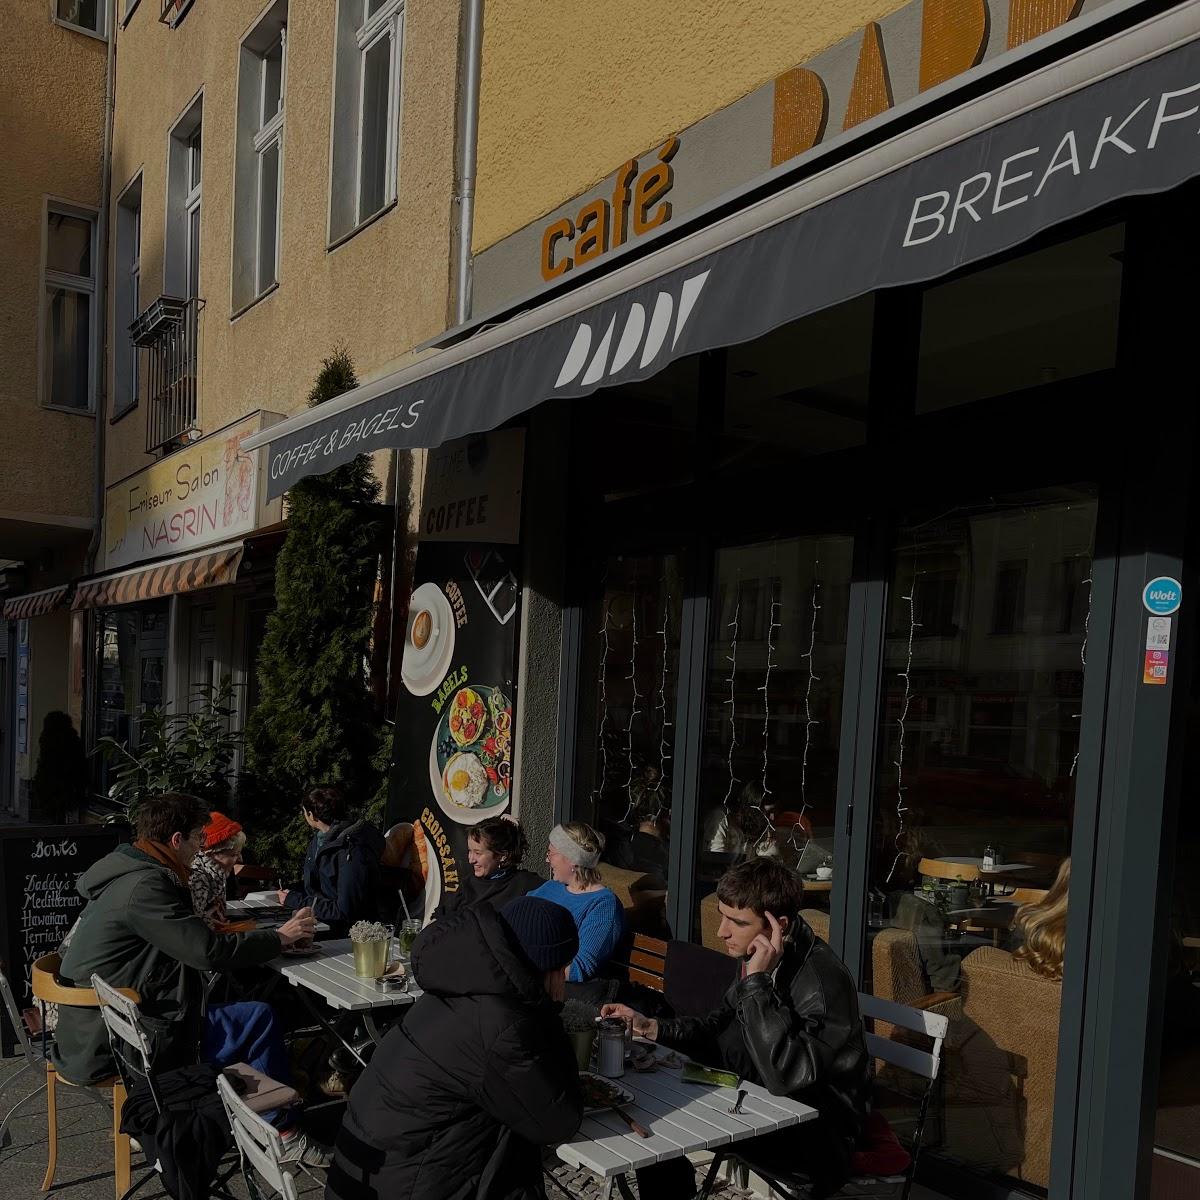 Restaurant "Café Daddy Breakfast, Bagel’s & Bowl’s" in Berlin